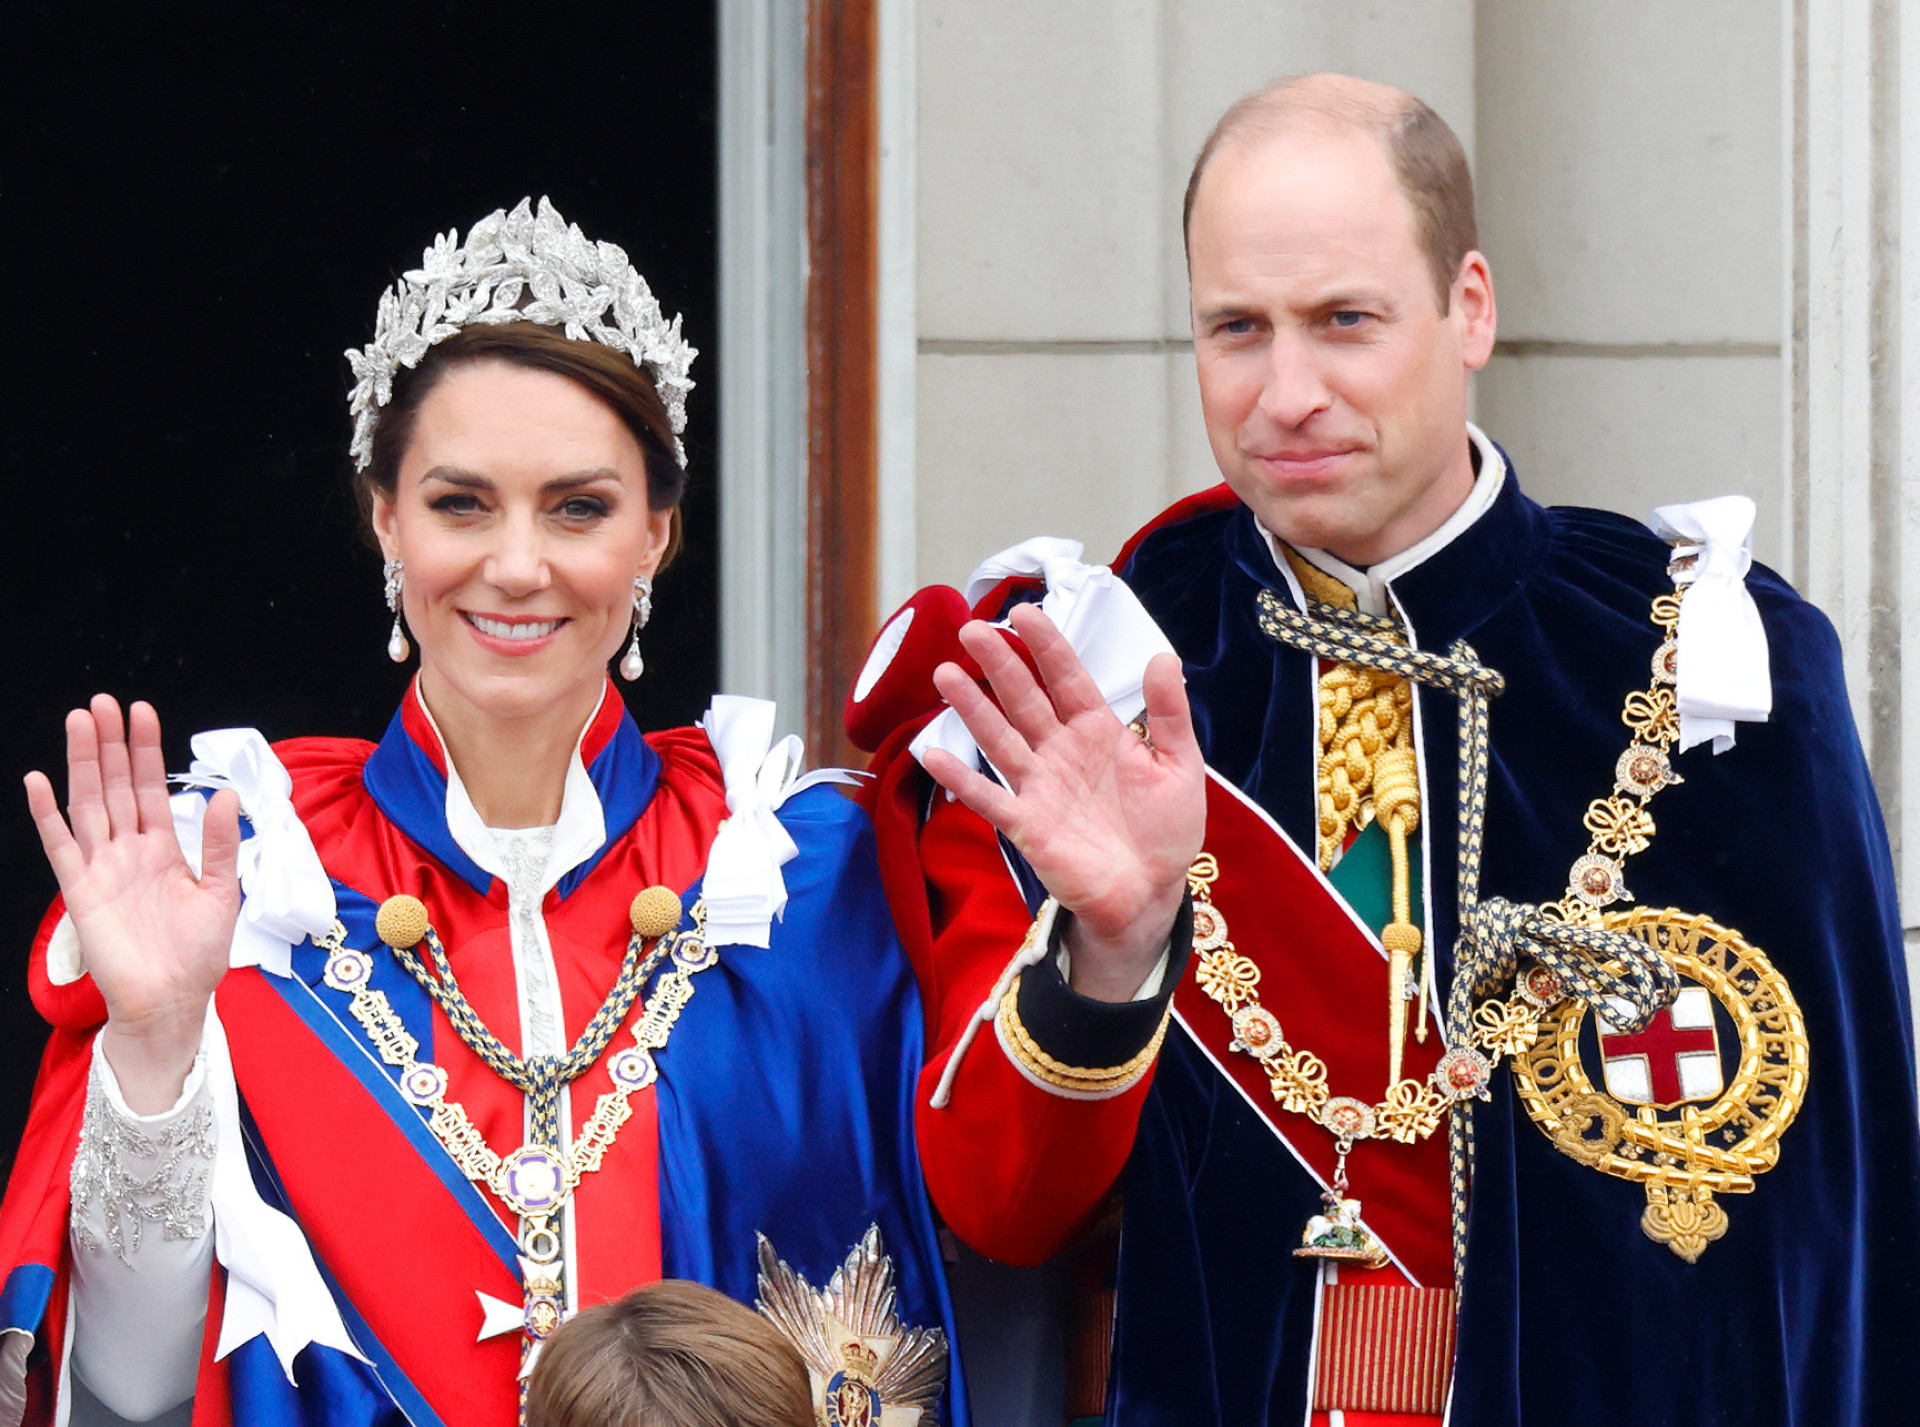 <p>Der erste in der Thronfolge ist Prinz William, er wird also König werden. Seine Frau, Catherine "Kate", Fürstin von Wales, wird als Königin-Gemahlin neben ihm auf dem Thron sitzen.</p>